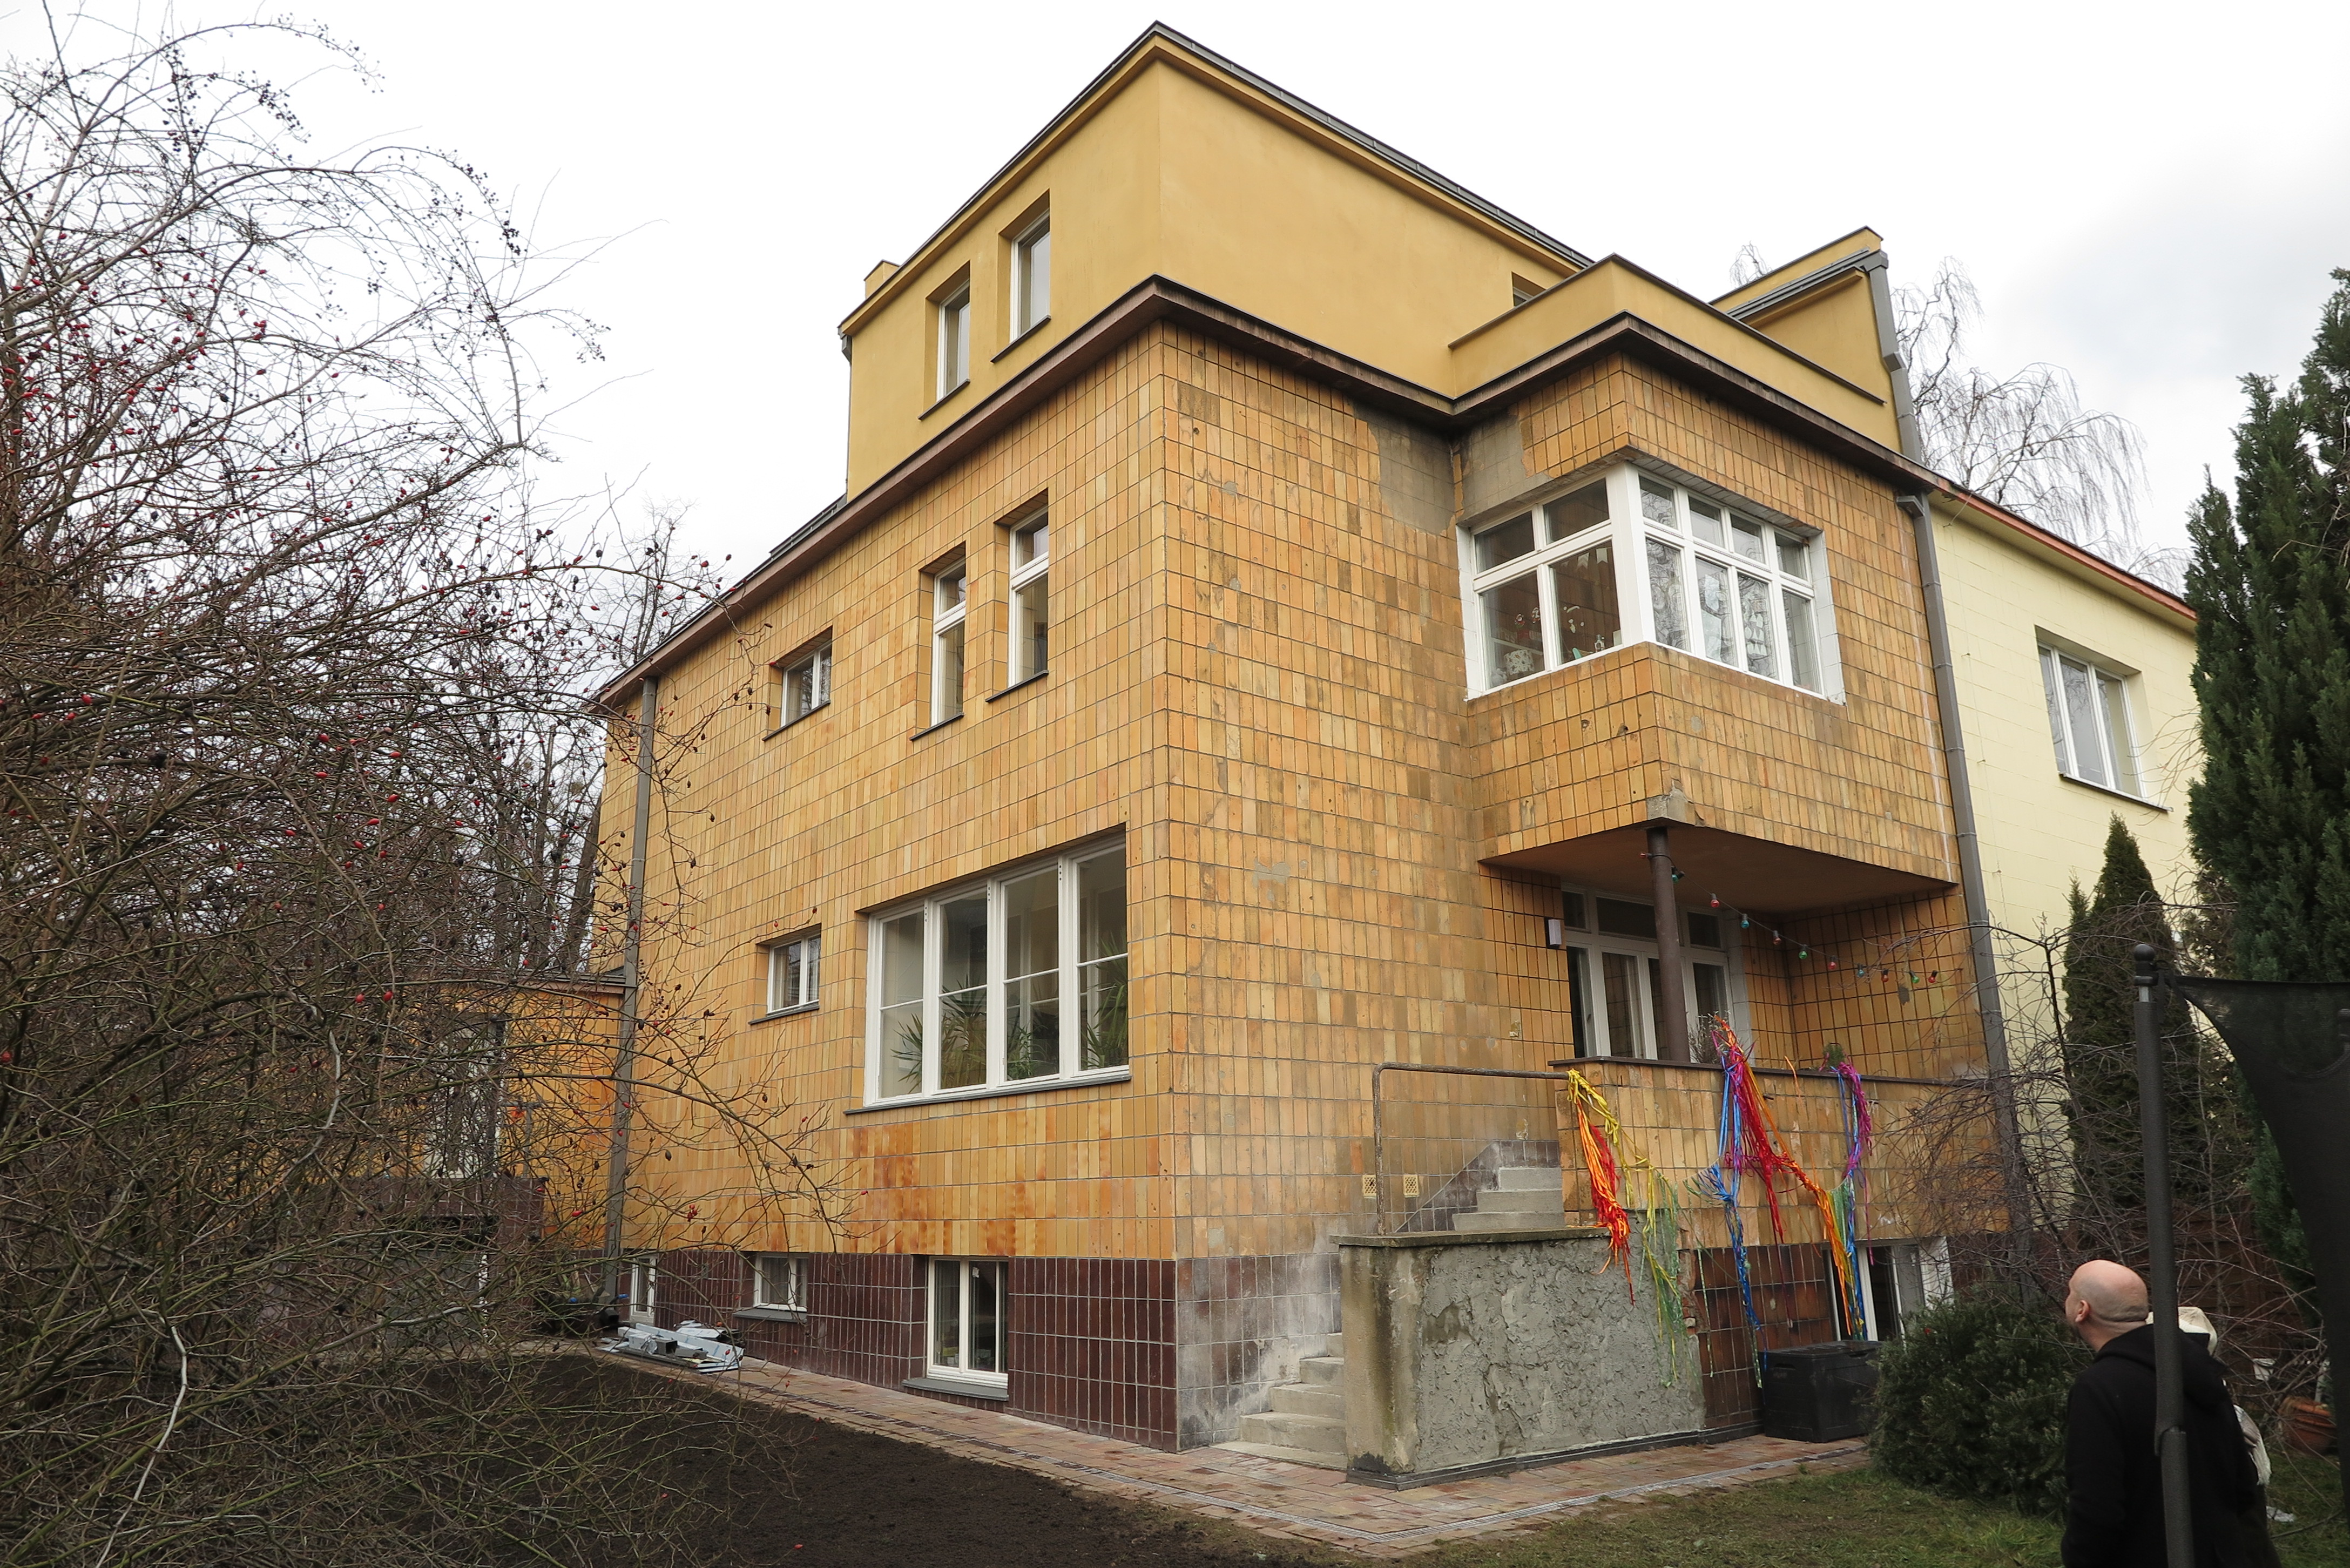 5.	Budynek mieszkalny, ul. Korzeniowskiego 25A -  remont elewacji budynku; remont dachu, wykonanie izolacji pionowej, remont balkonu, podestów i schodów zewnętrznych